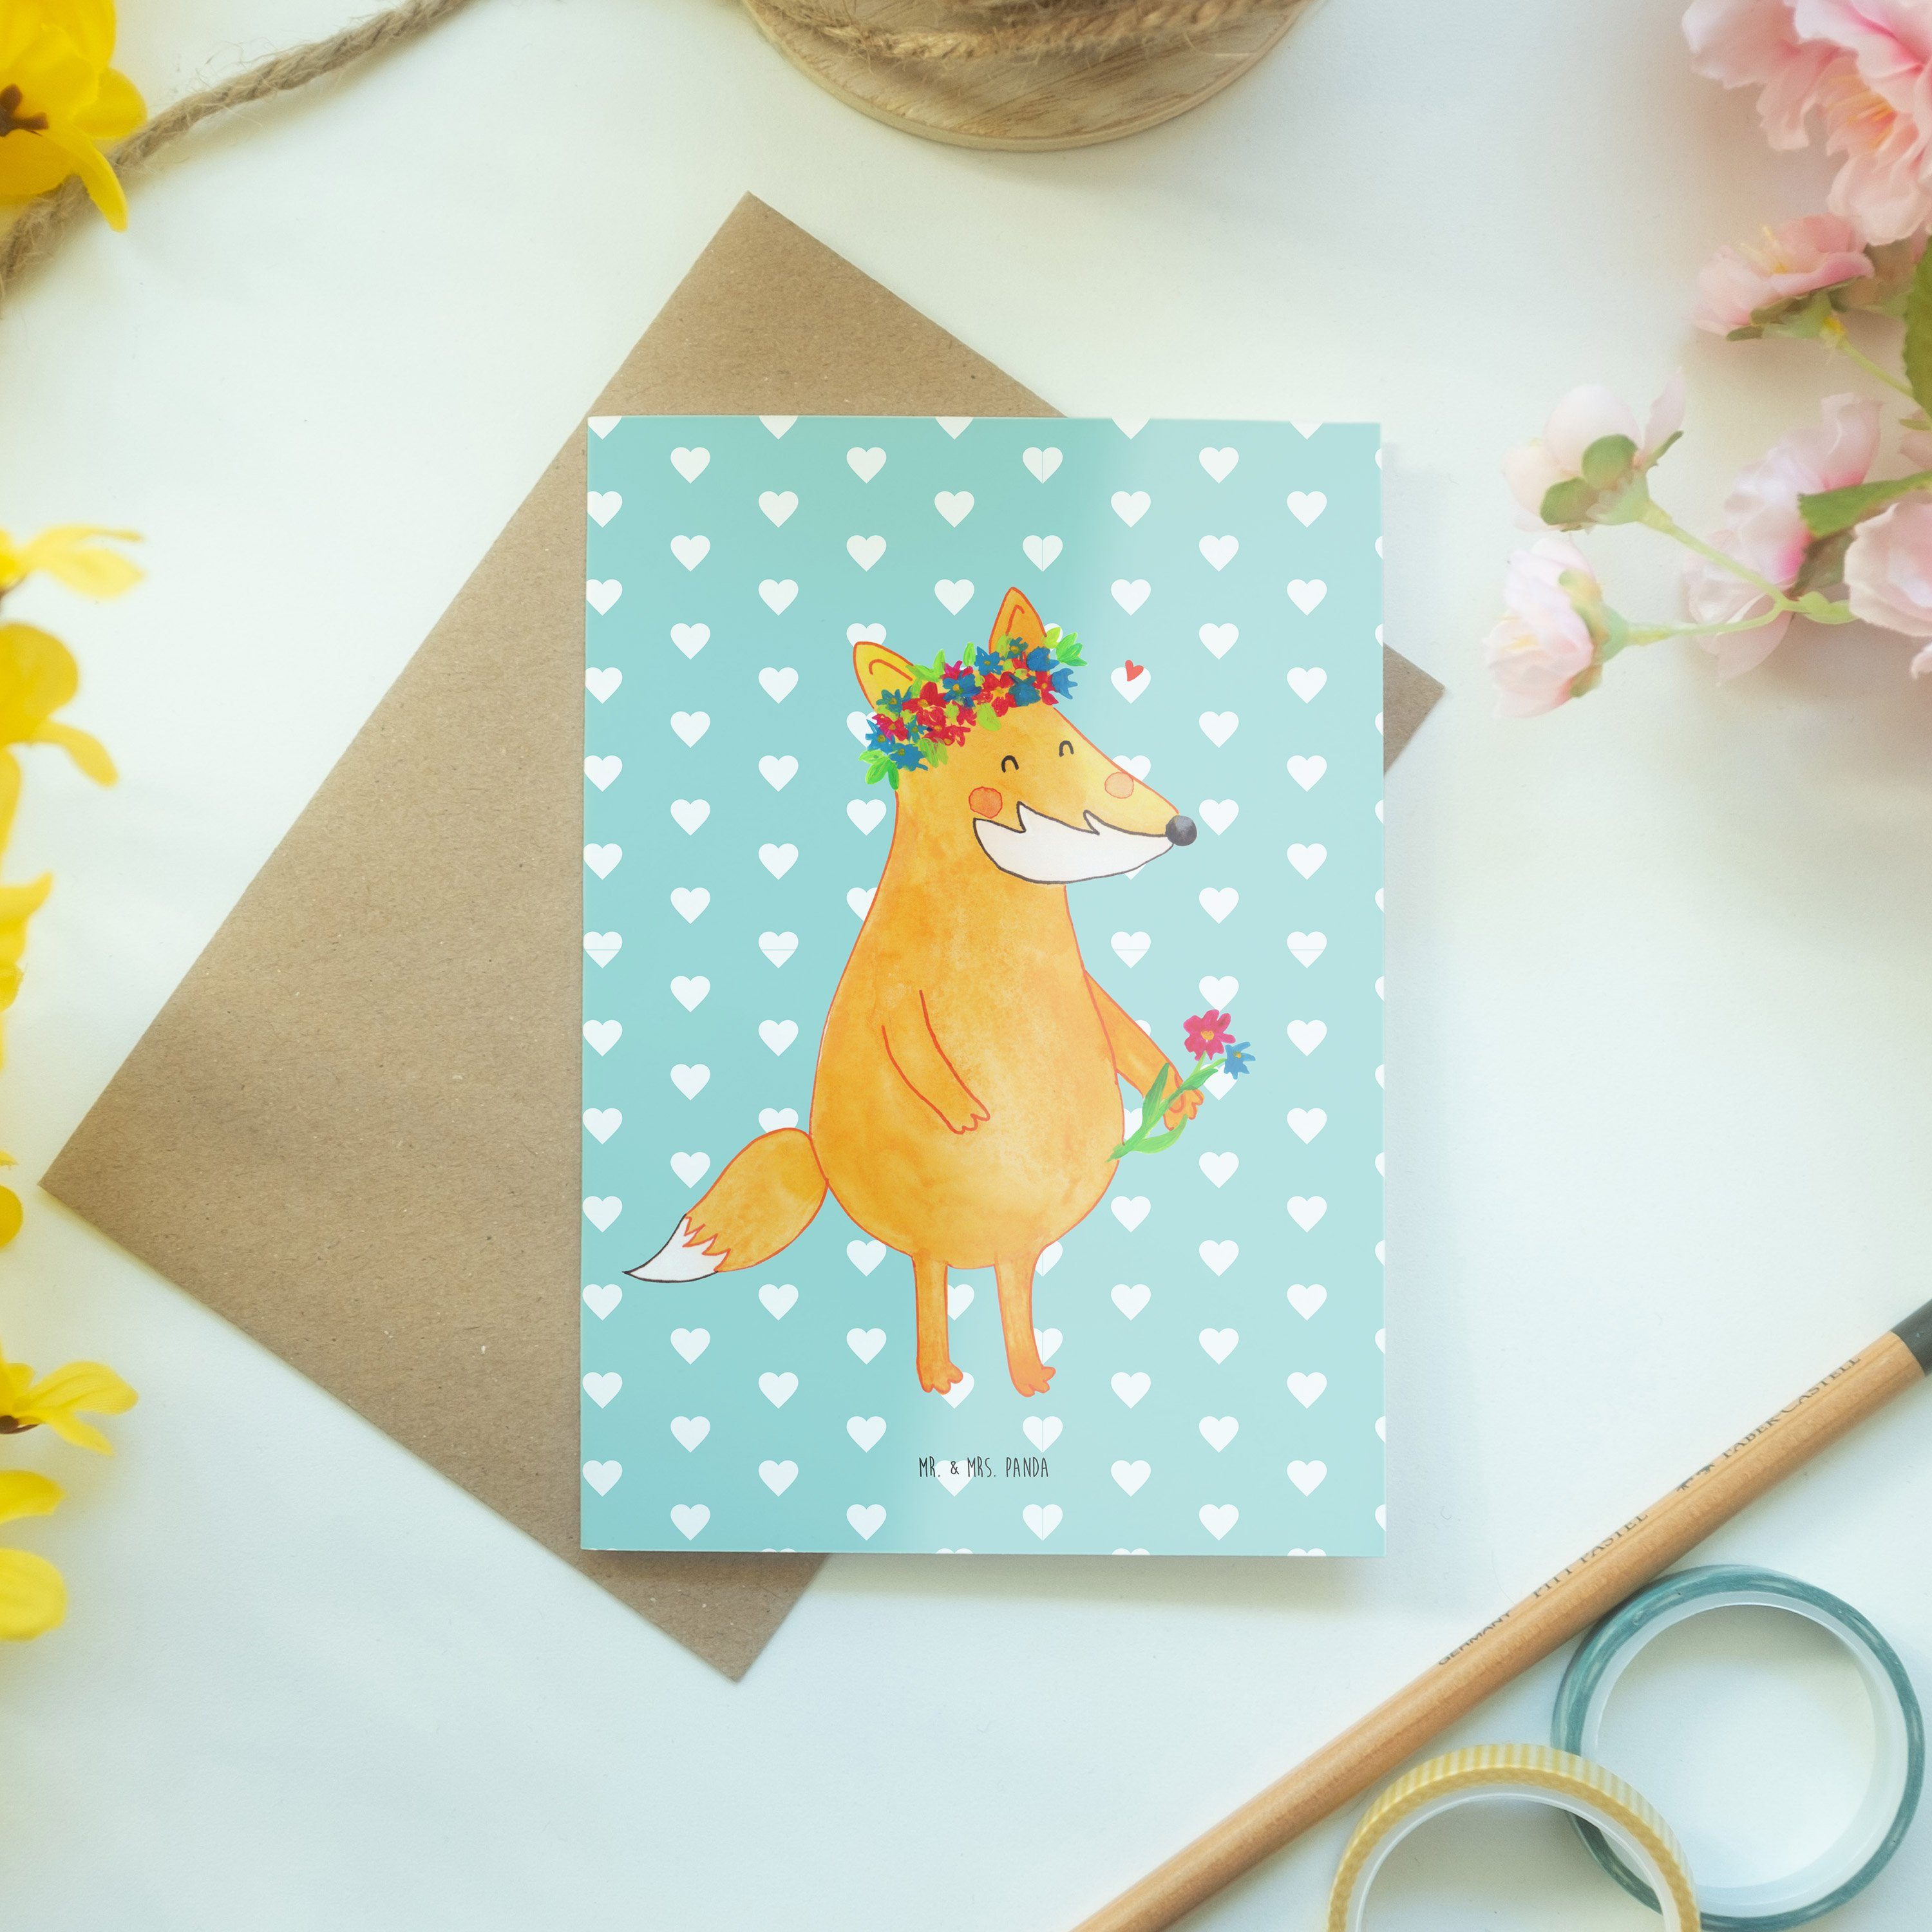 & Mrs. Blumen - Mr. Hochzeitskarte, Blumenliebe Pastell - Panda Grußkarte Türkis Geschenk, Fuchs